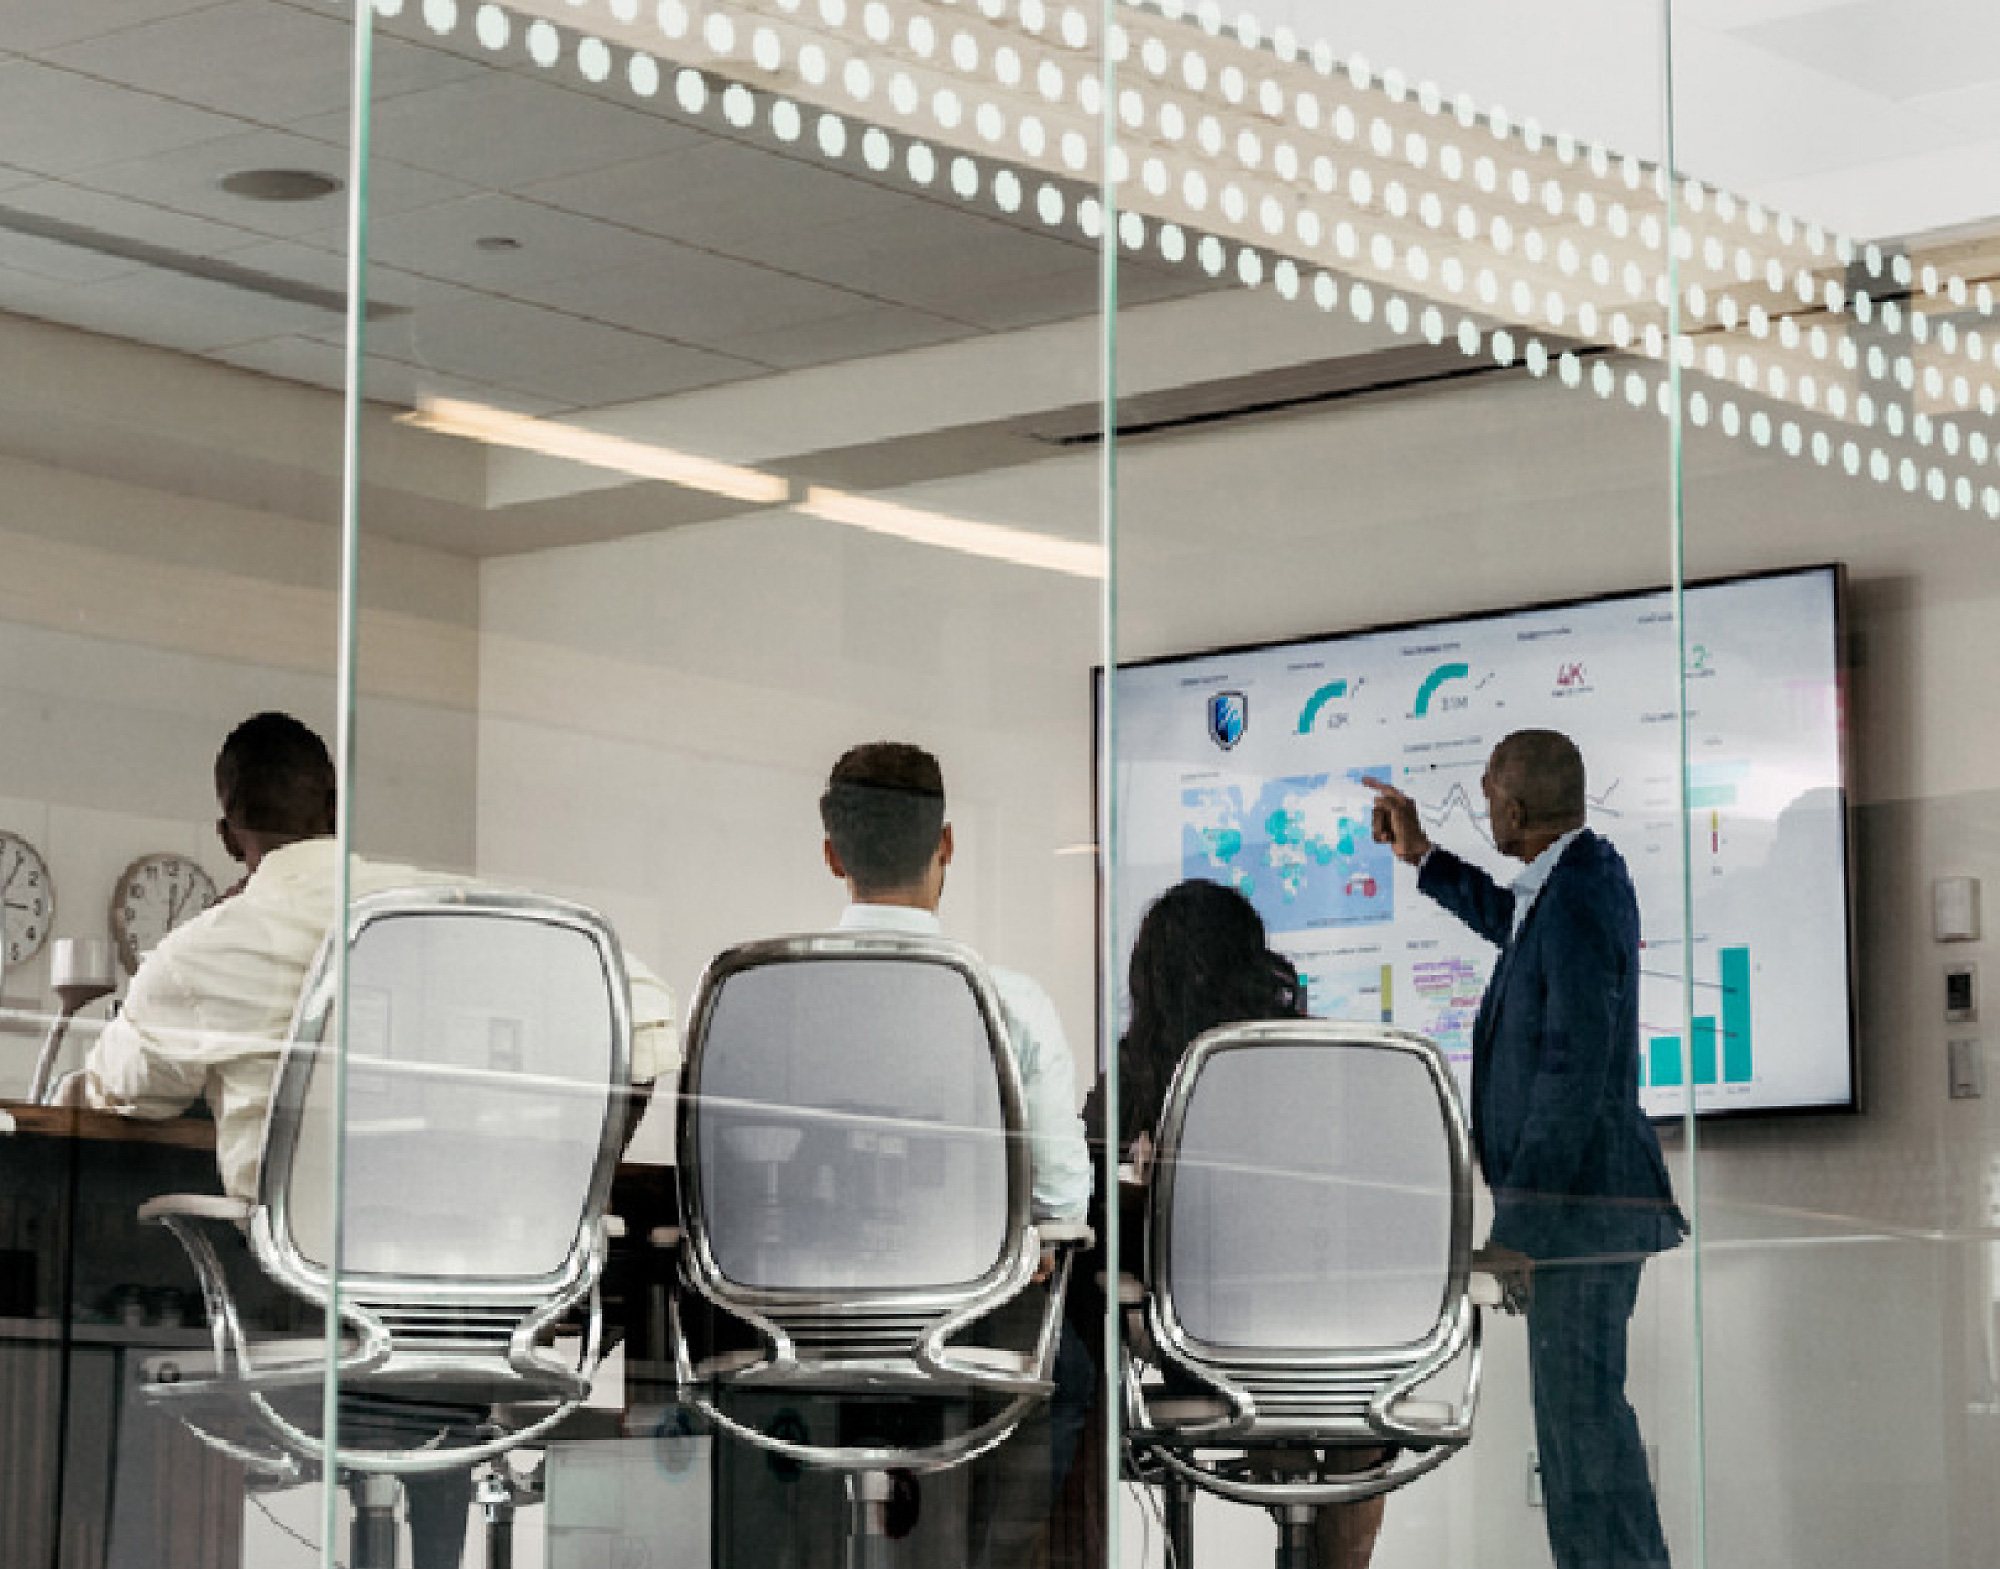 Через скляну стіну конференц-залу видно чотирьох спеціалістів, один із яких вказує на цифрові дані на великому екрані.